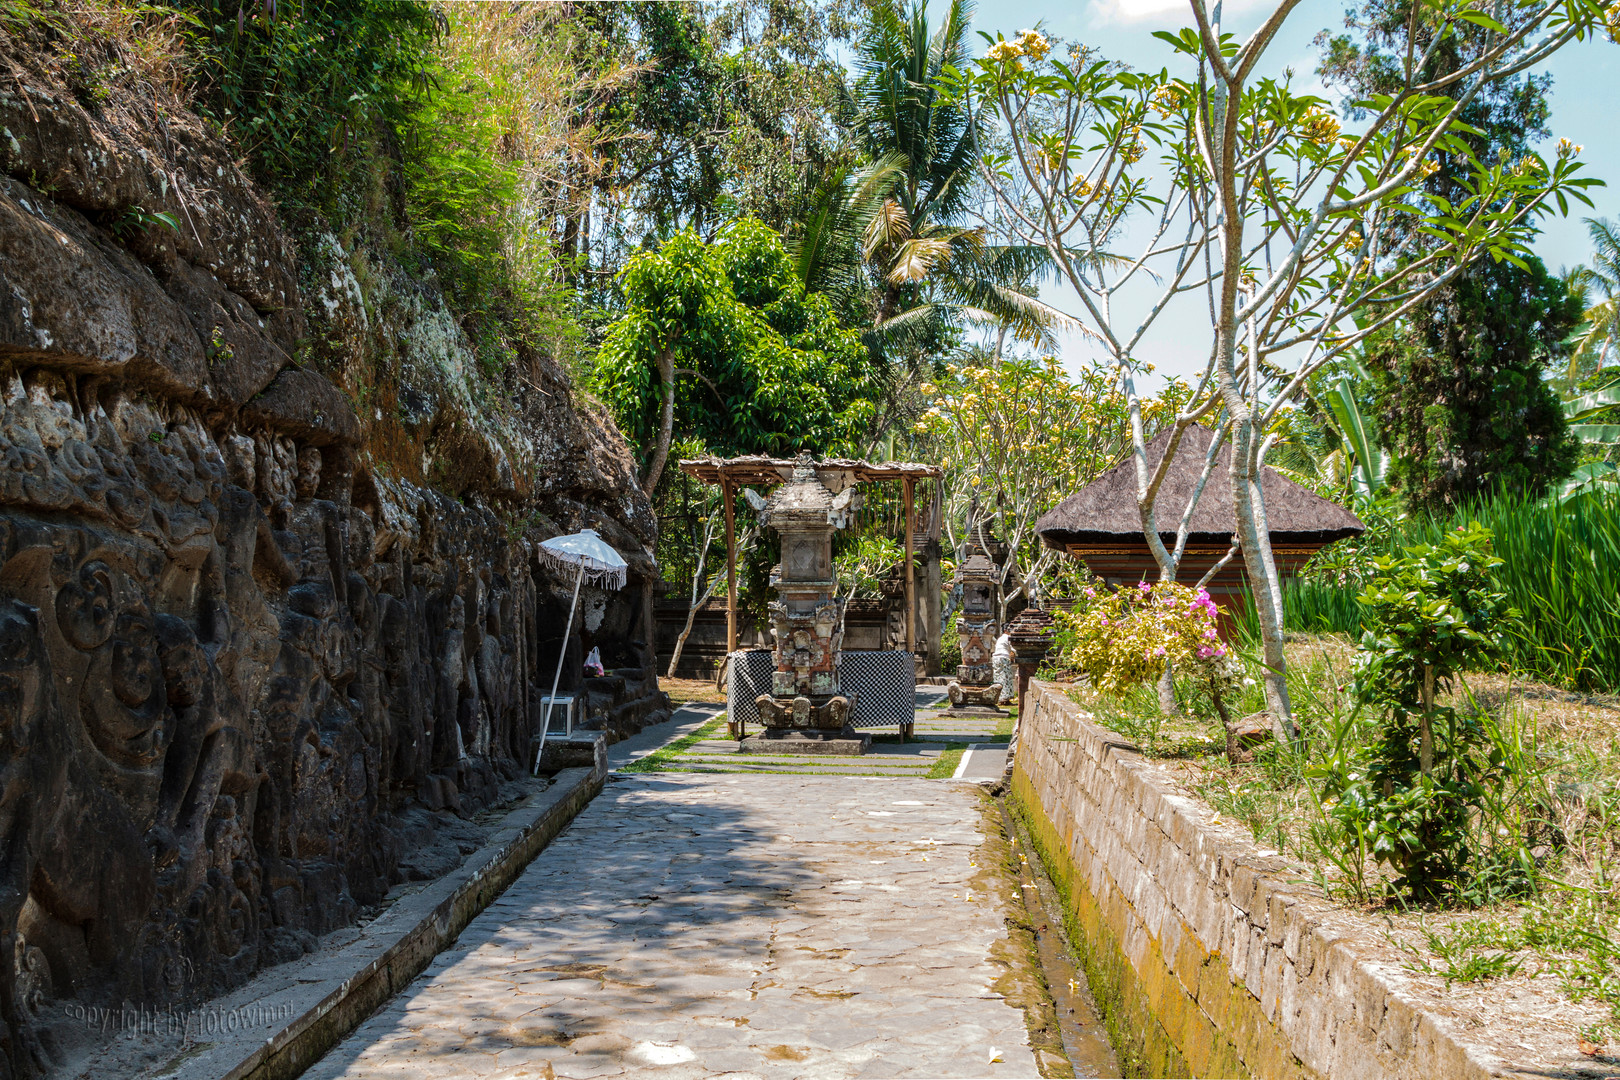 Bali - Yeh Pulu/Relieftempel